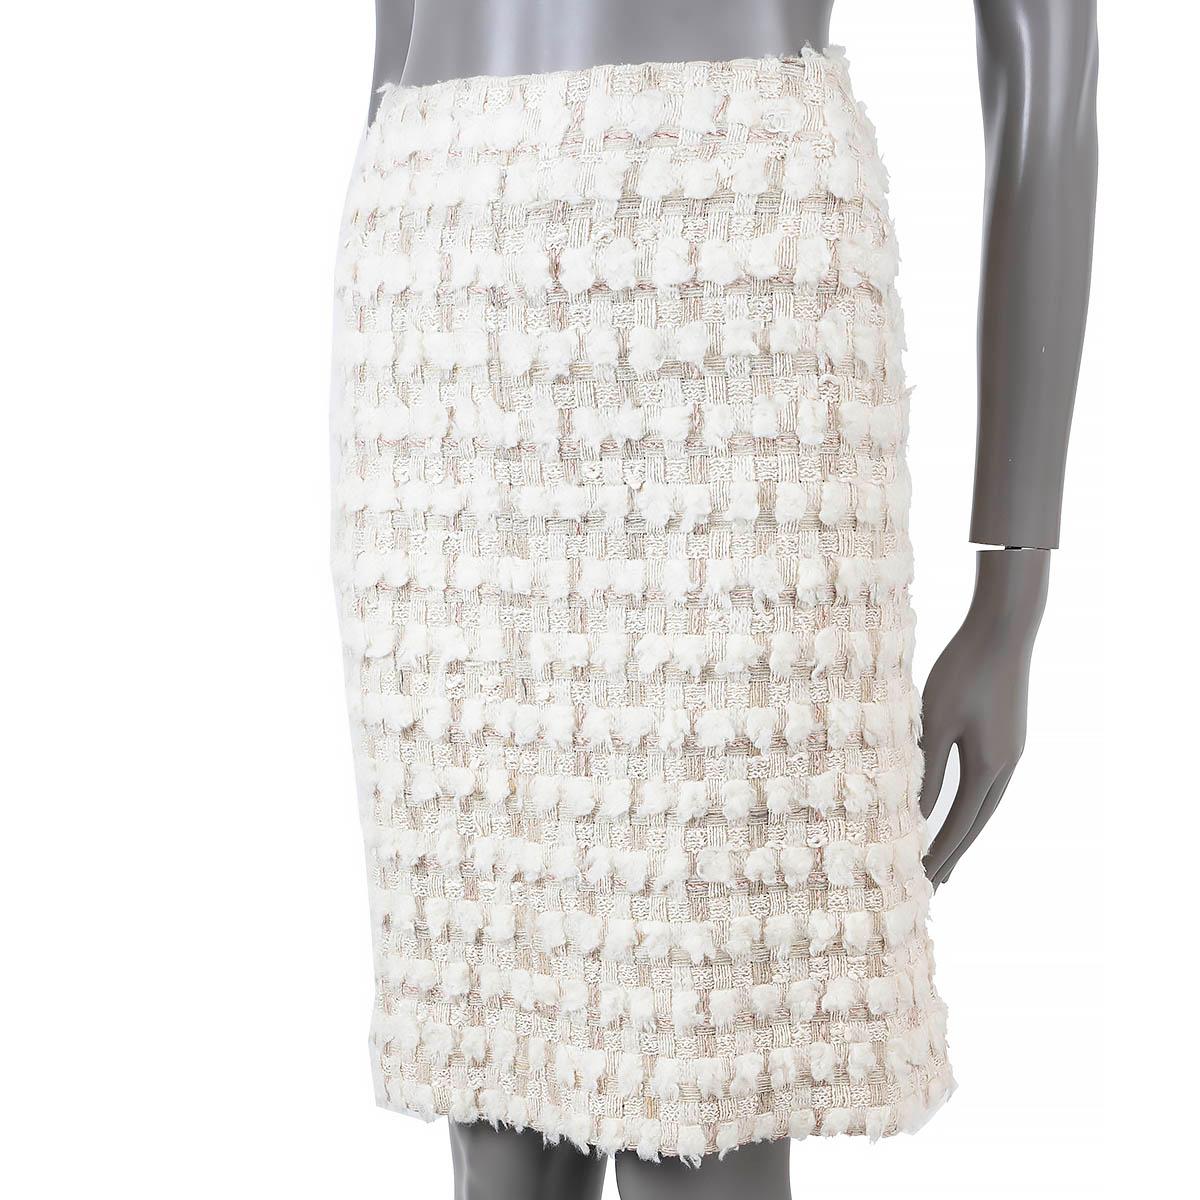 100% authentischer Chanel Tweed-Rock in Ecru und Rot aus Seide (79%), Wolle (19%), Nylon (1%) und Polyester (1%). Schließt mit einem verdeckten Reißverschluss im Rücken und ist mit Seide (100%) gefüttert. Wurde getragen und ist in ausgezeichnetem